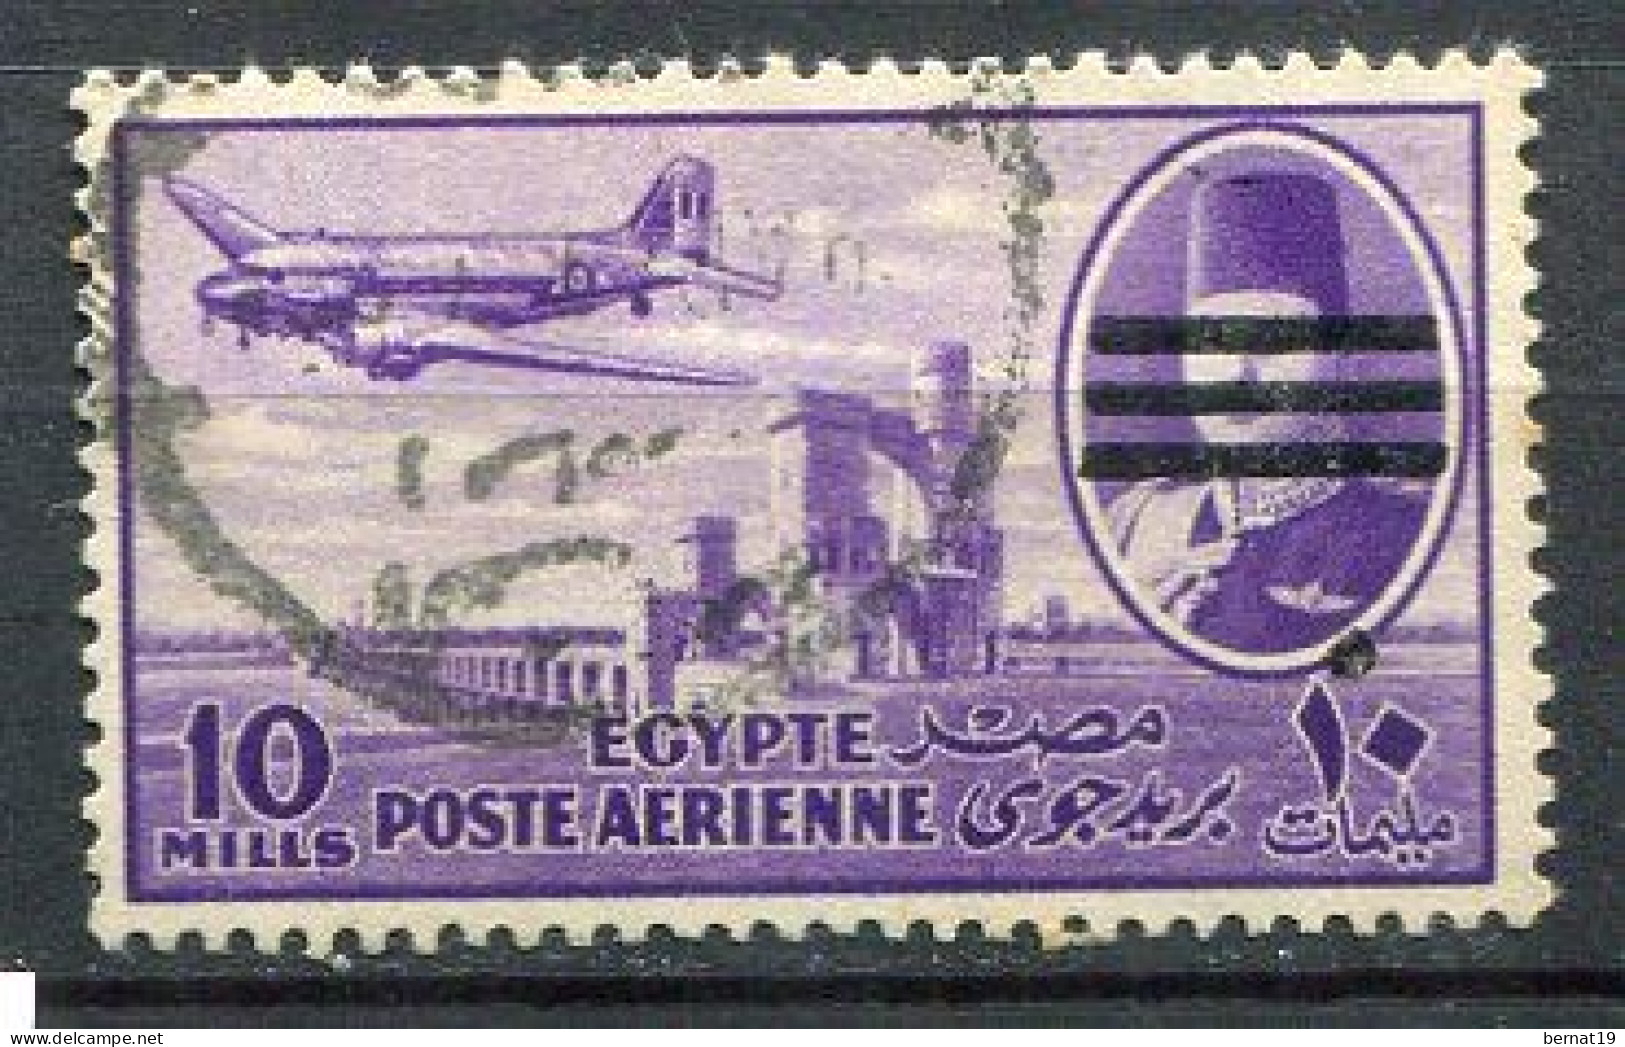 Egipto 1953. Yvert A 62A Usado. - Poste Aérienne